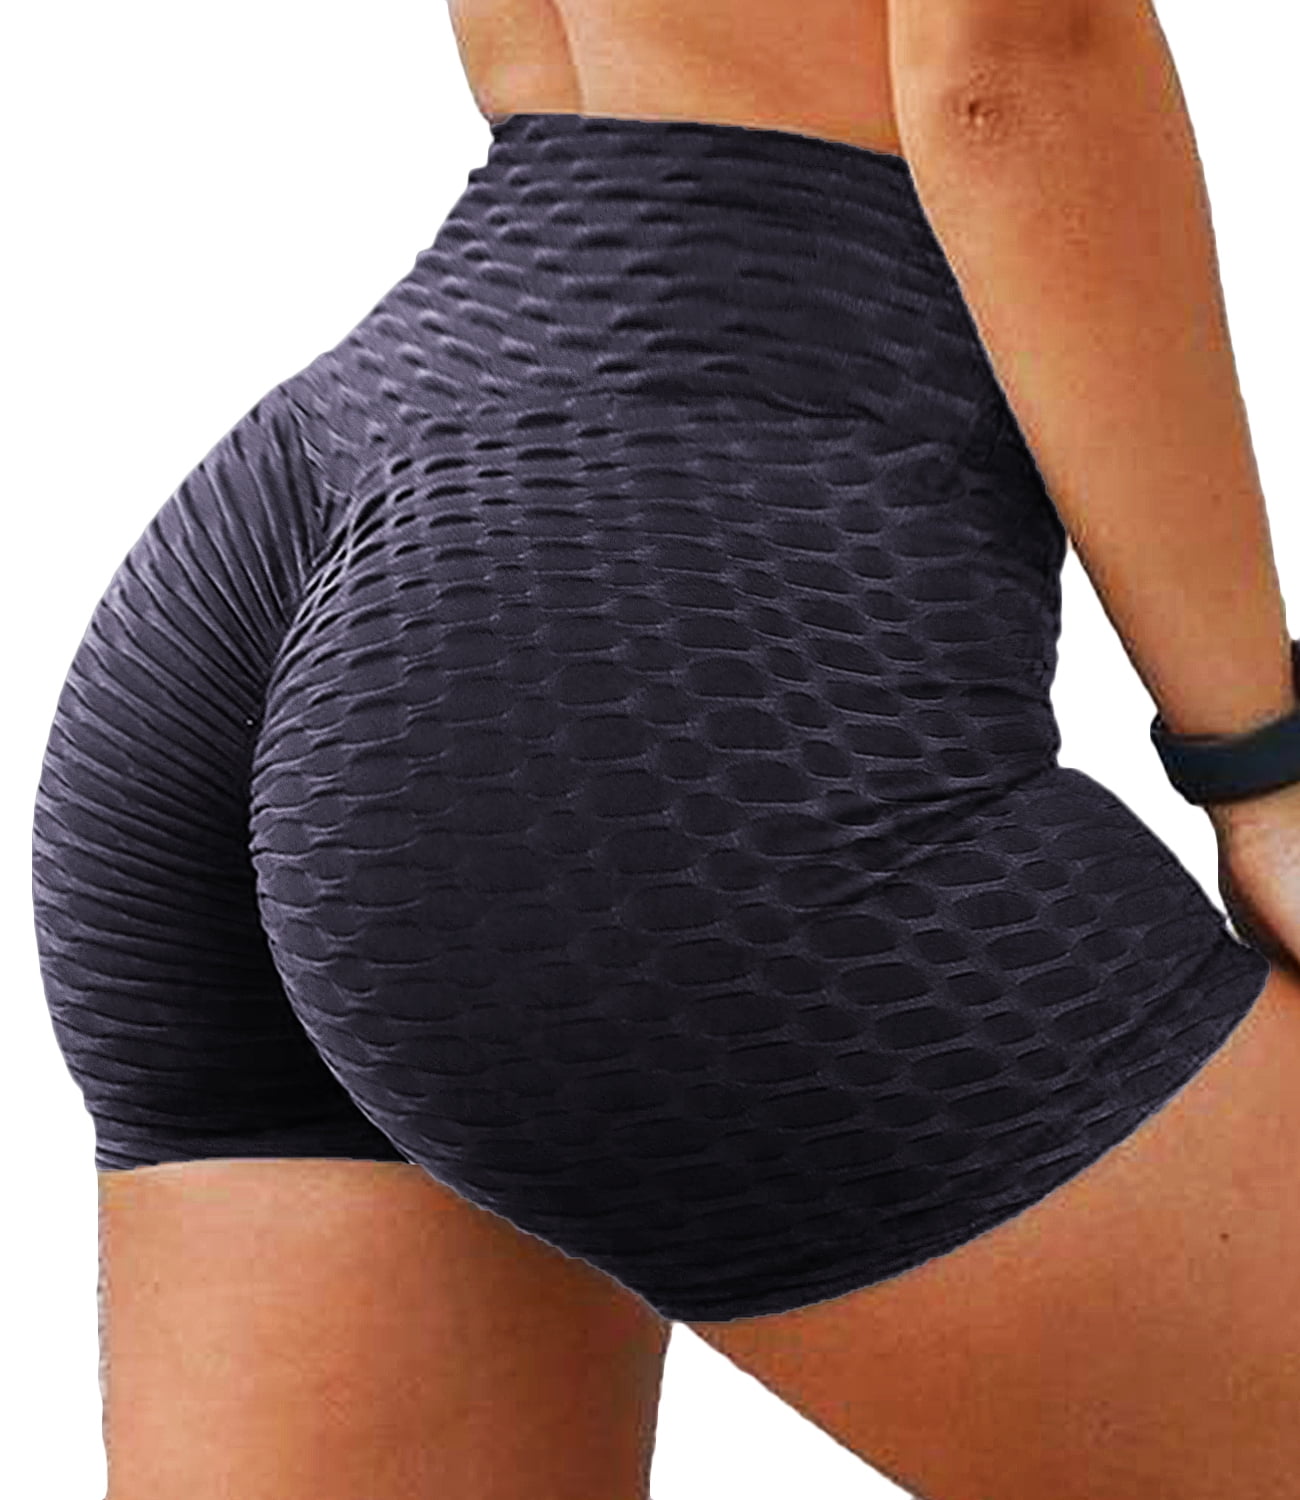 Dog Sunscreen Butt Porn - SEASUM Women's High Waist Butt Lift Workout Shorts Tummy Control Textured  Yoga Sports Shorts Dark Blue XL - Walmart.com